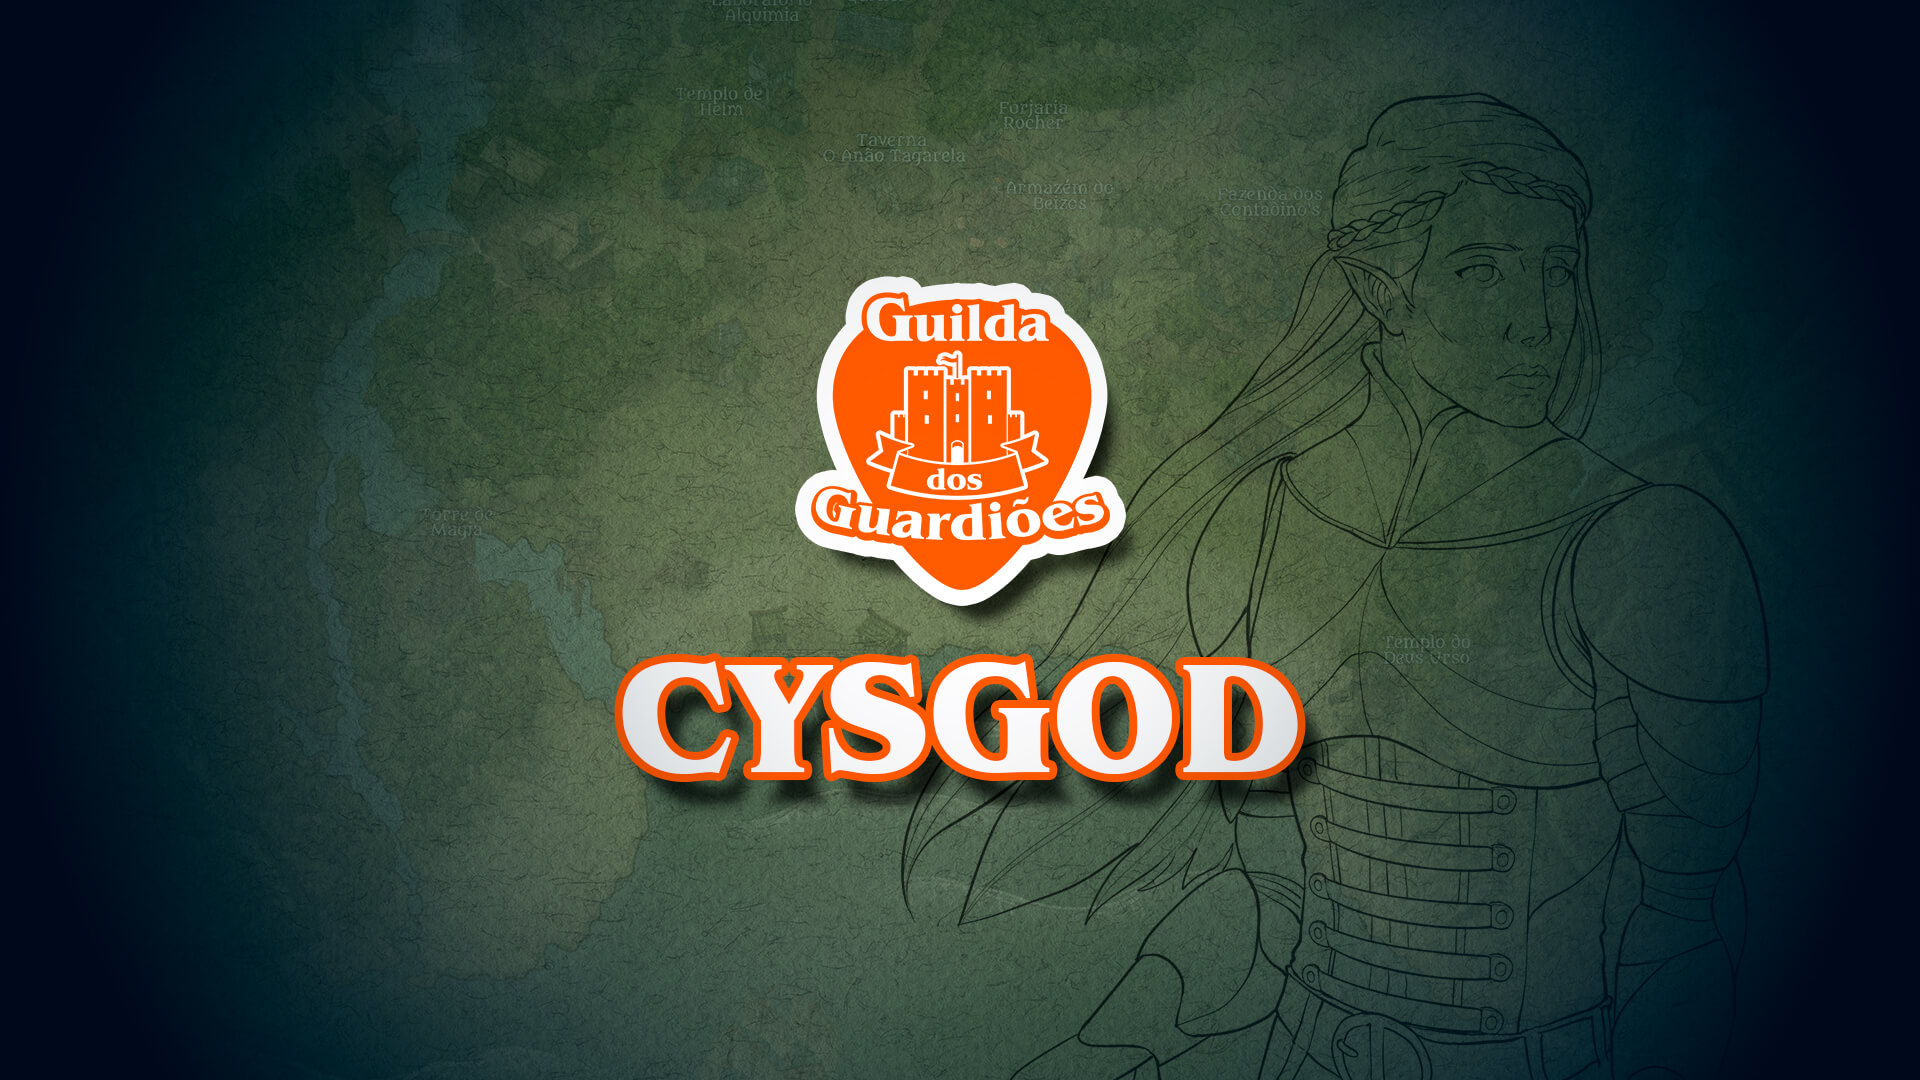 Cysgod Ysbryd – Guilda dos Guardiões – NPCS